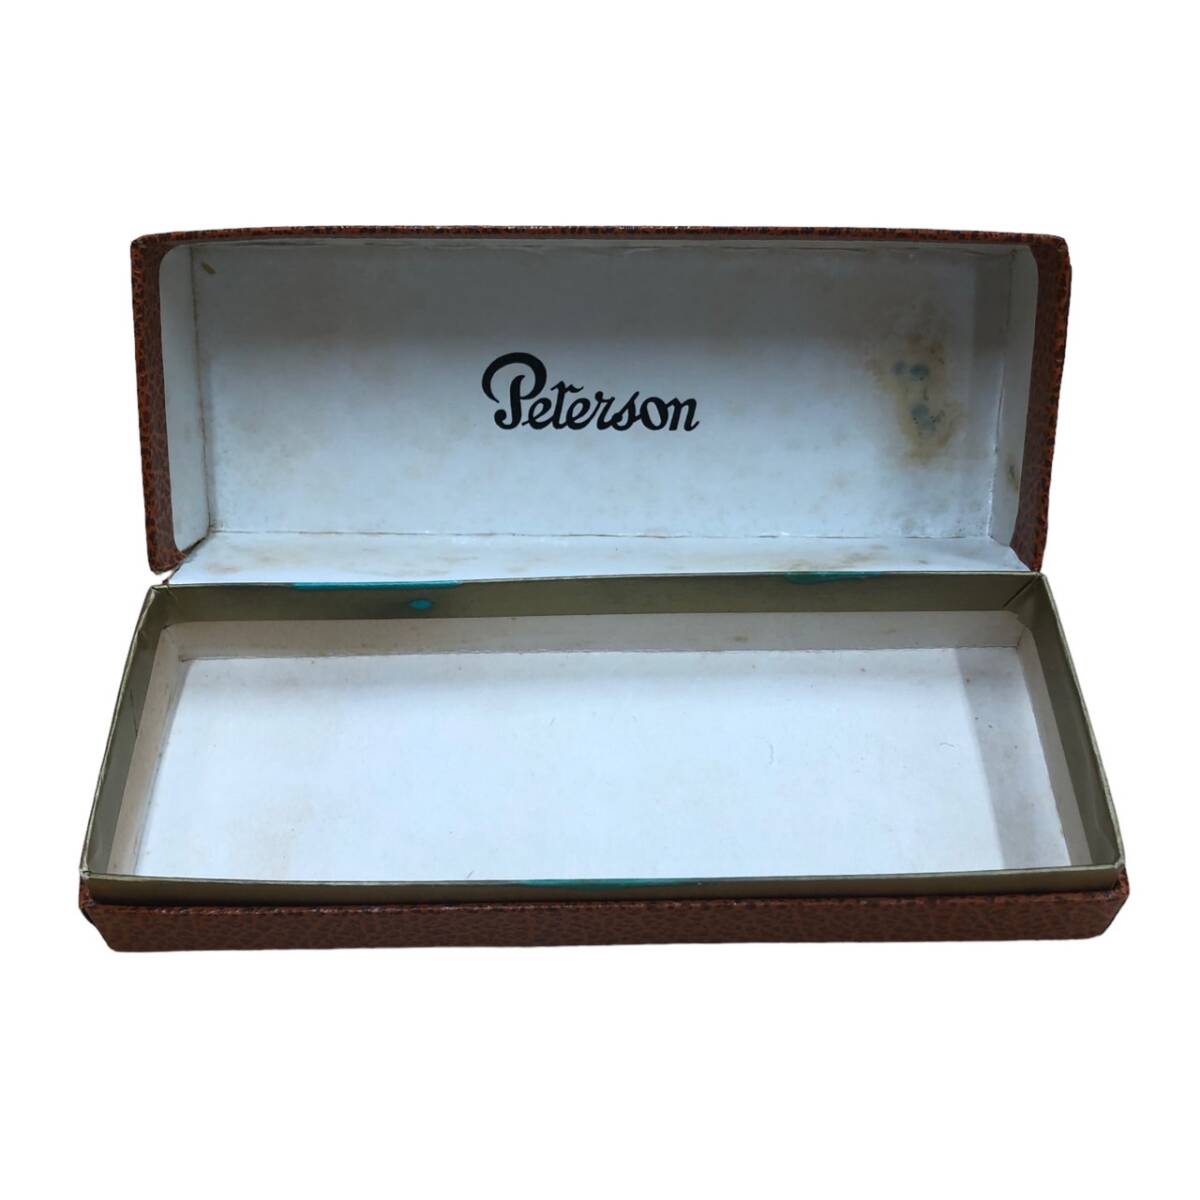 ピーターソン パイプ 金具 PETERSON Dublin 喫煙具 コレクション 箱 ケース付き ウッド ゴールドカラーの画像9